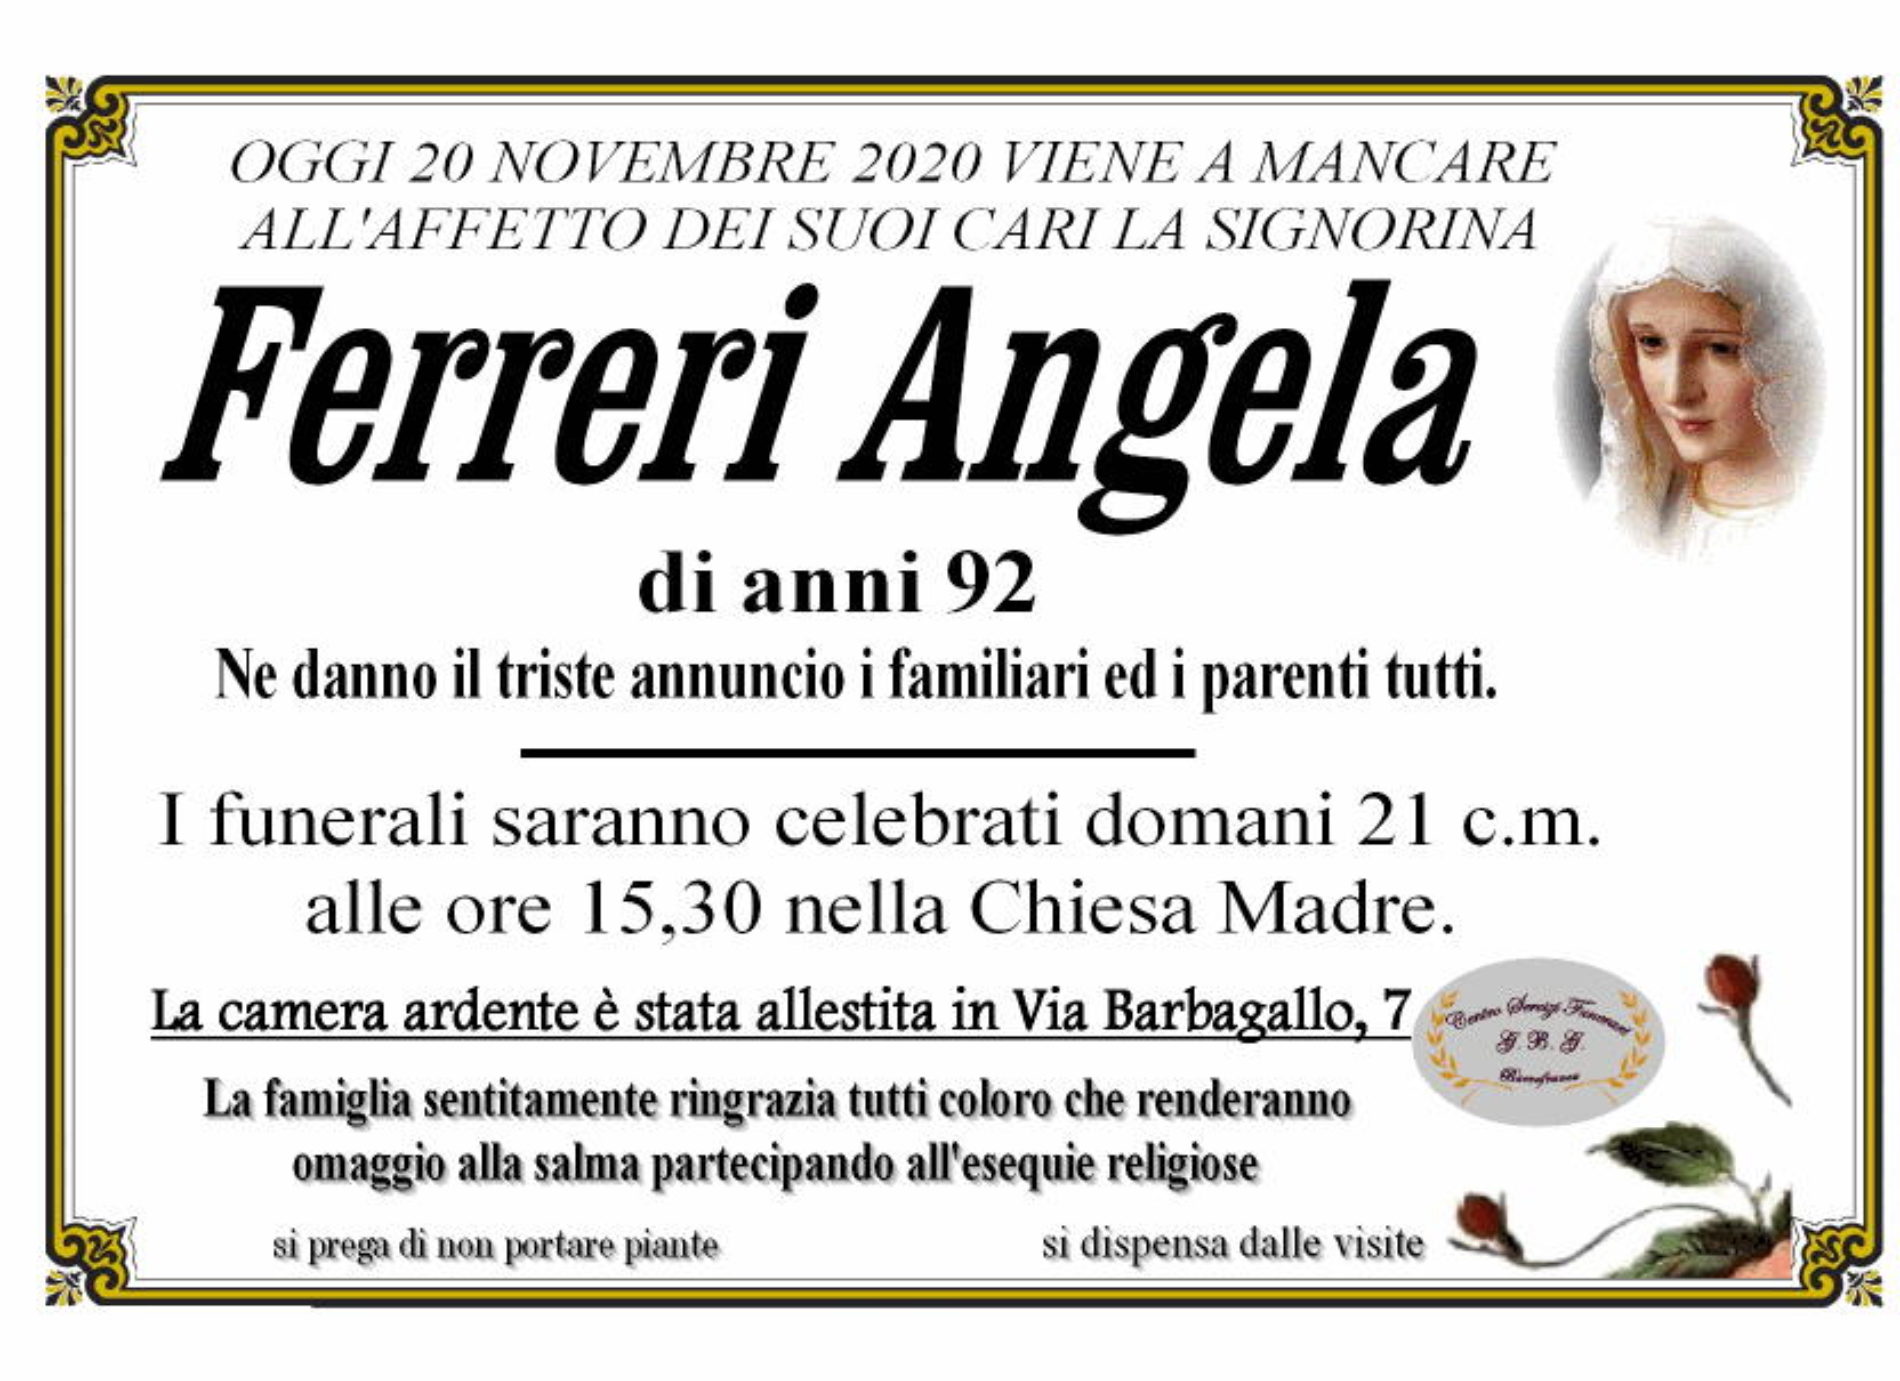 Annuncio servizi funerari agenzia G.B.G. sig.ra Ferreri Angela di anni 92